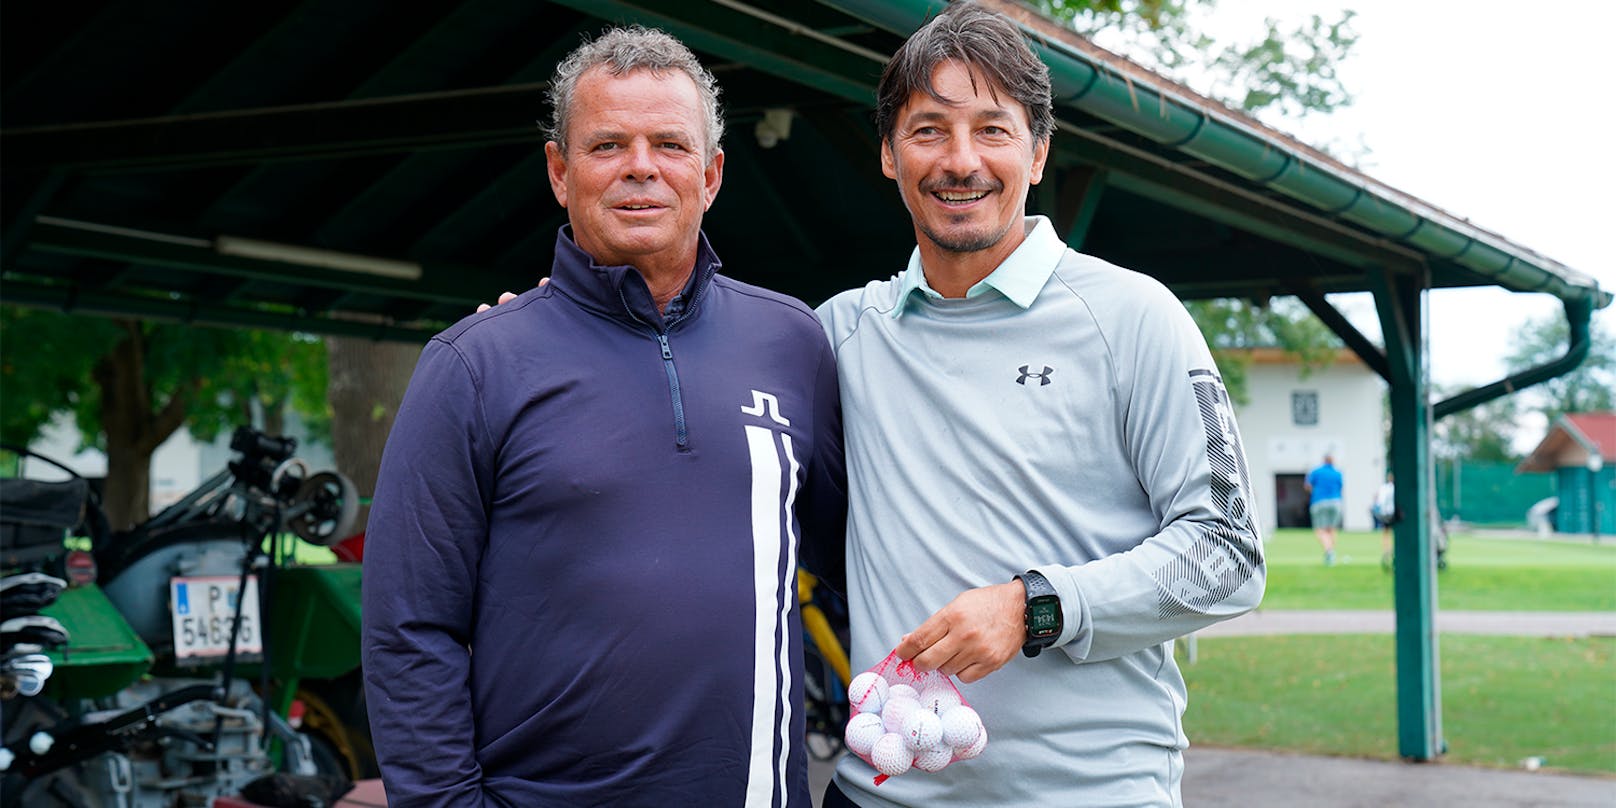 Vastić beweist gutes Händchen beim Golfen